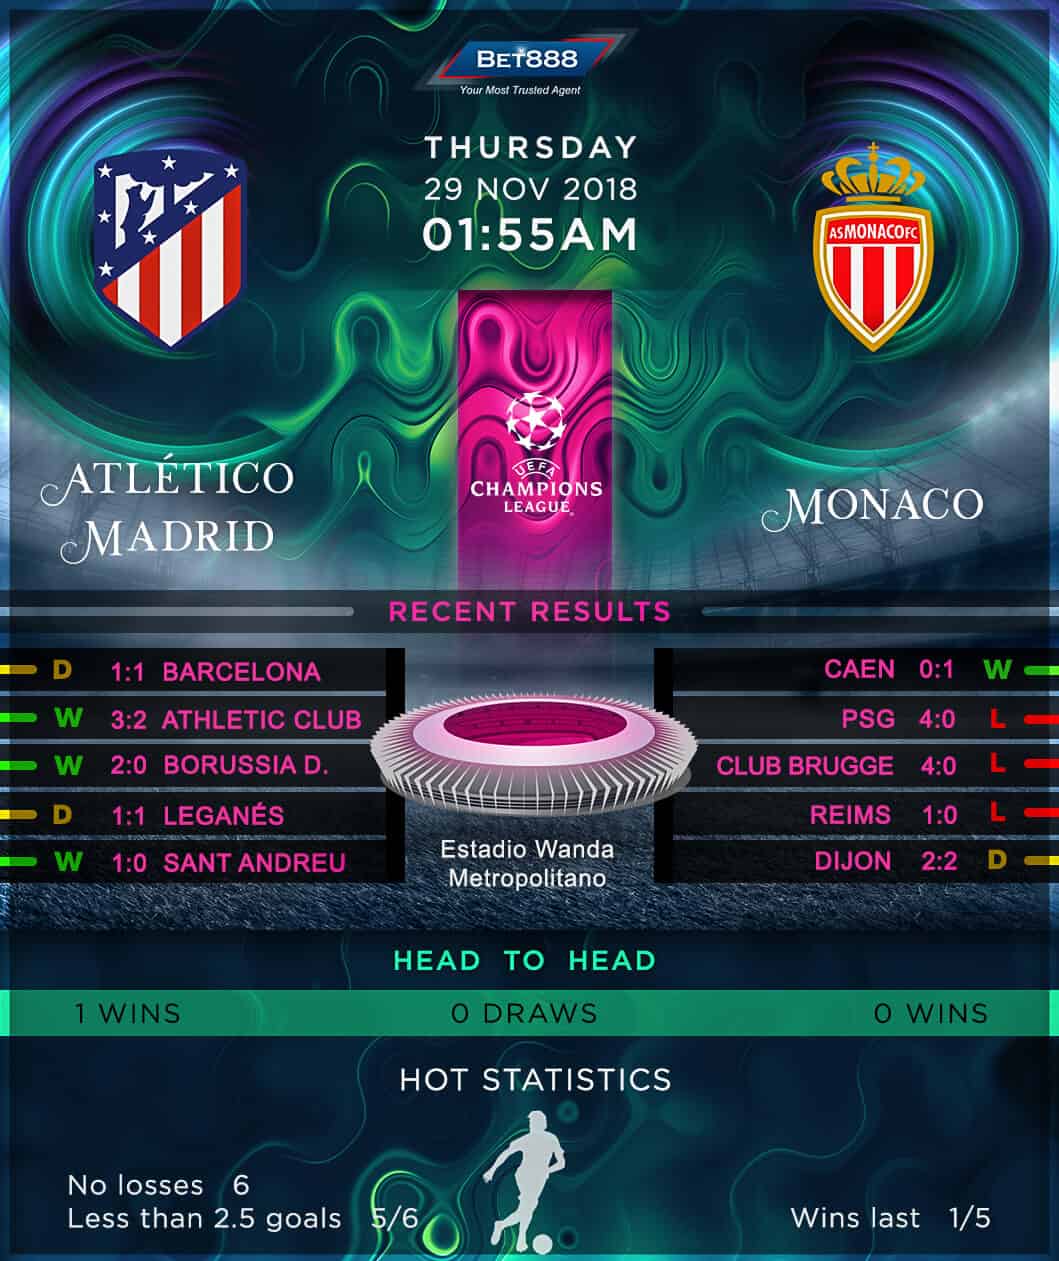 Atletico Madrid vs Monaco 29/11/18